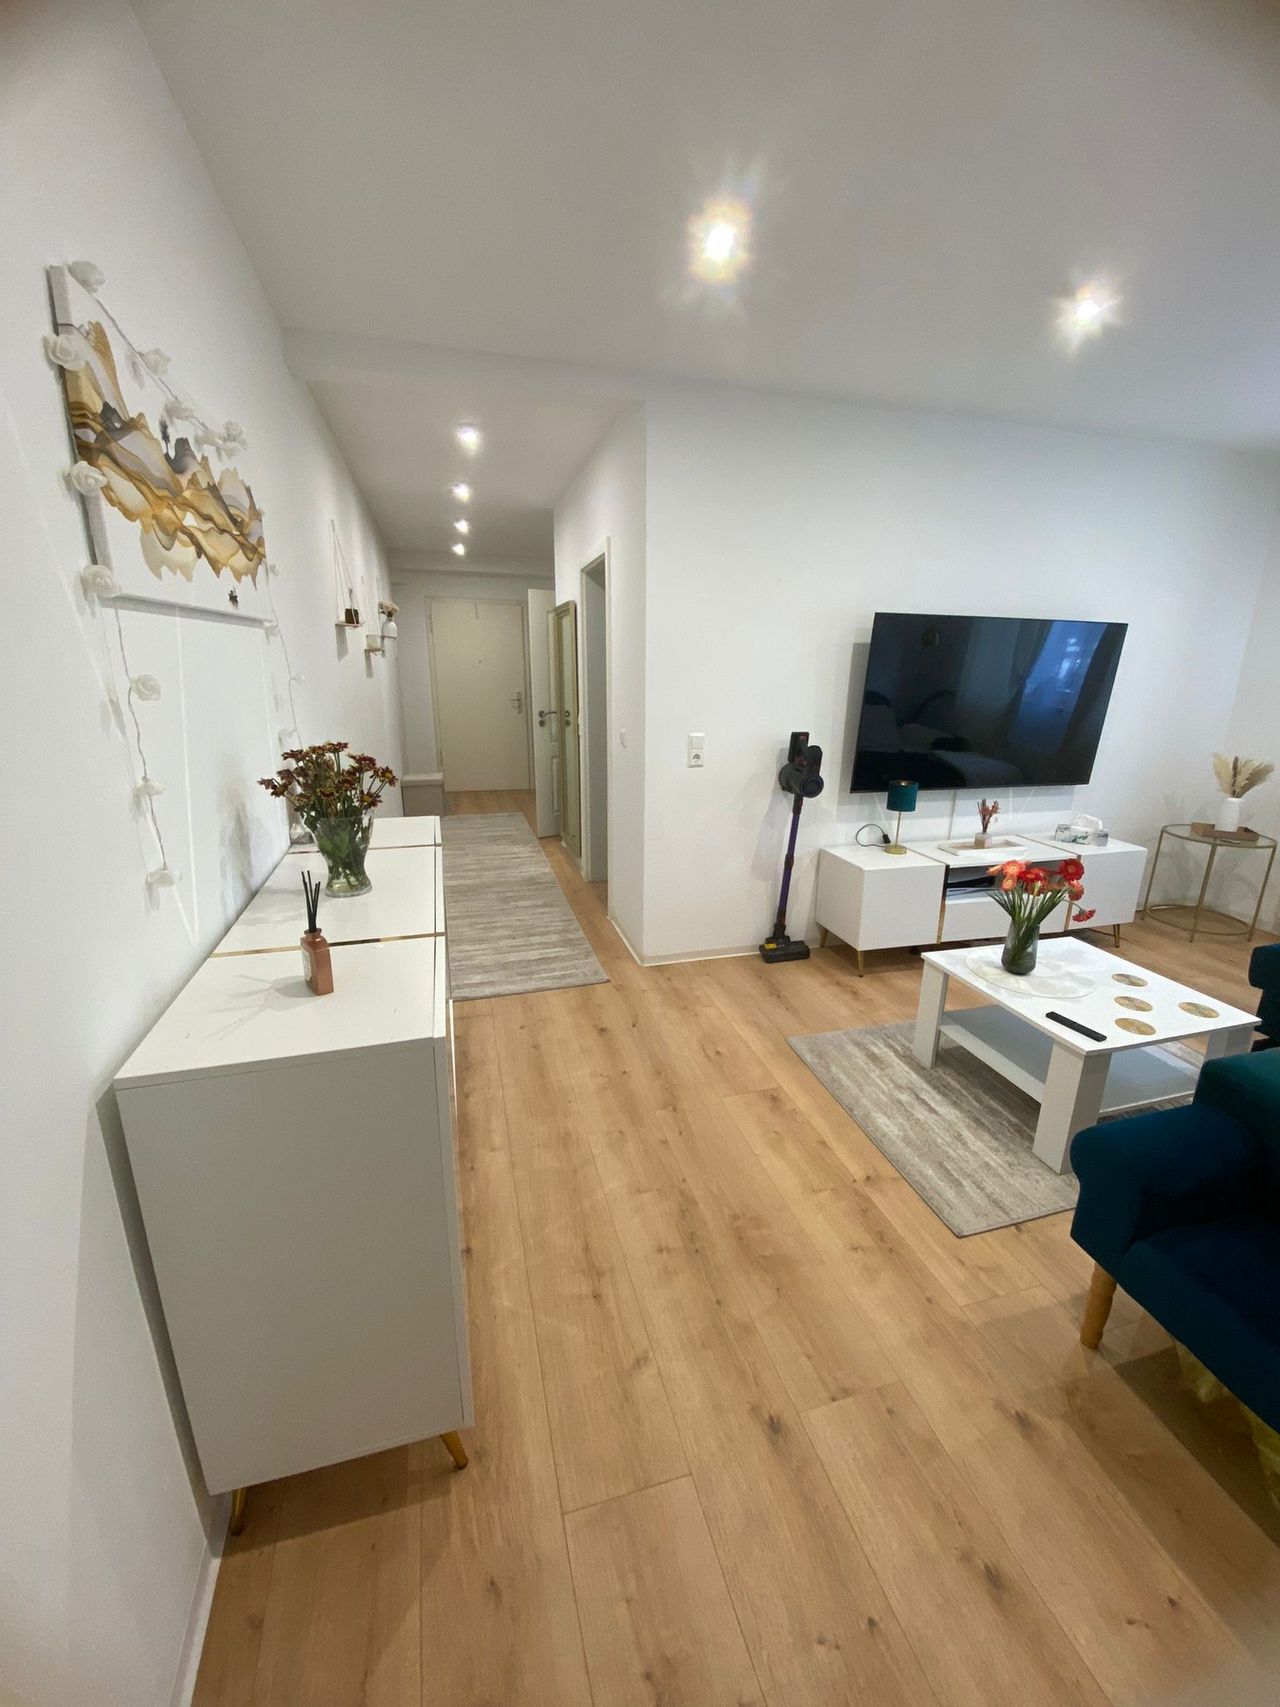 New, modern apartment in Stuttgart